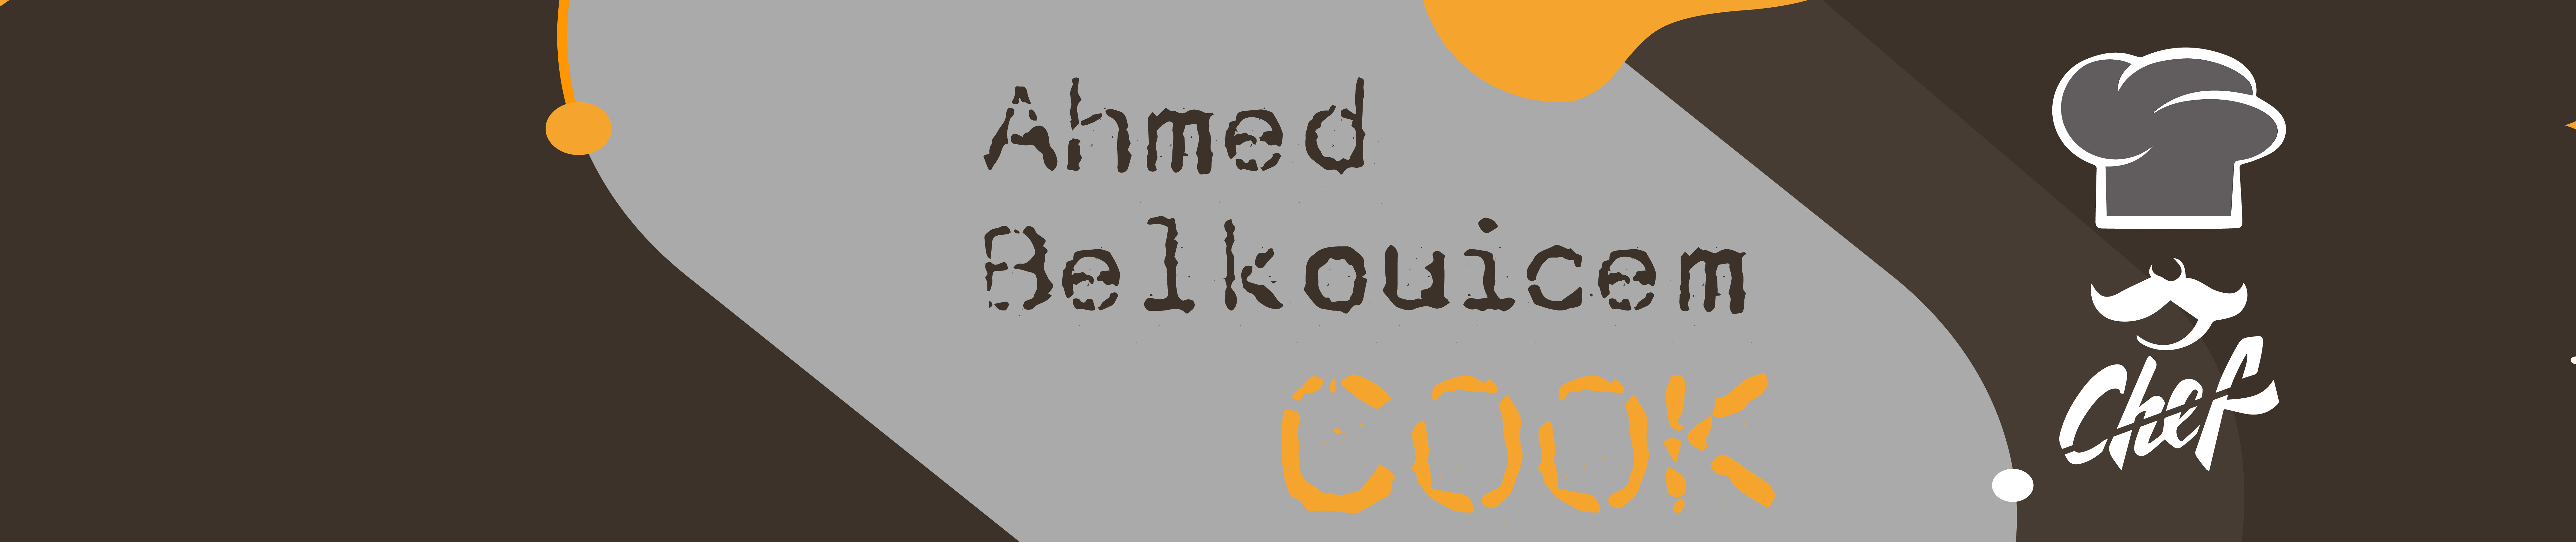 AHMED BELKOUICEM's profile banner